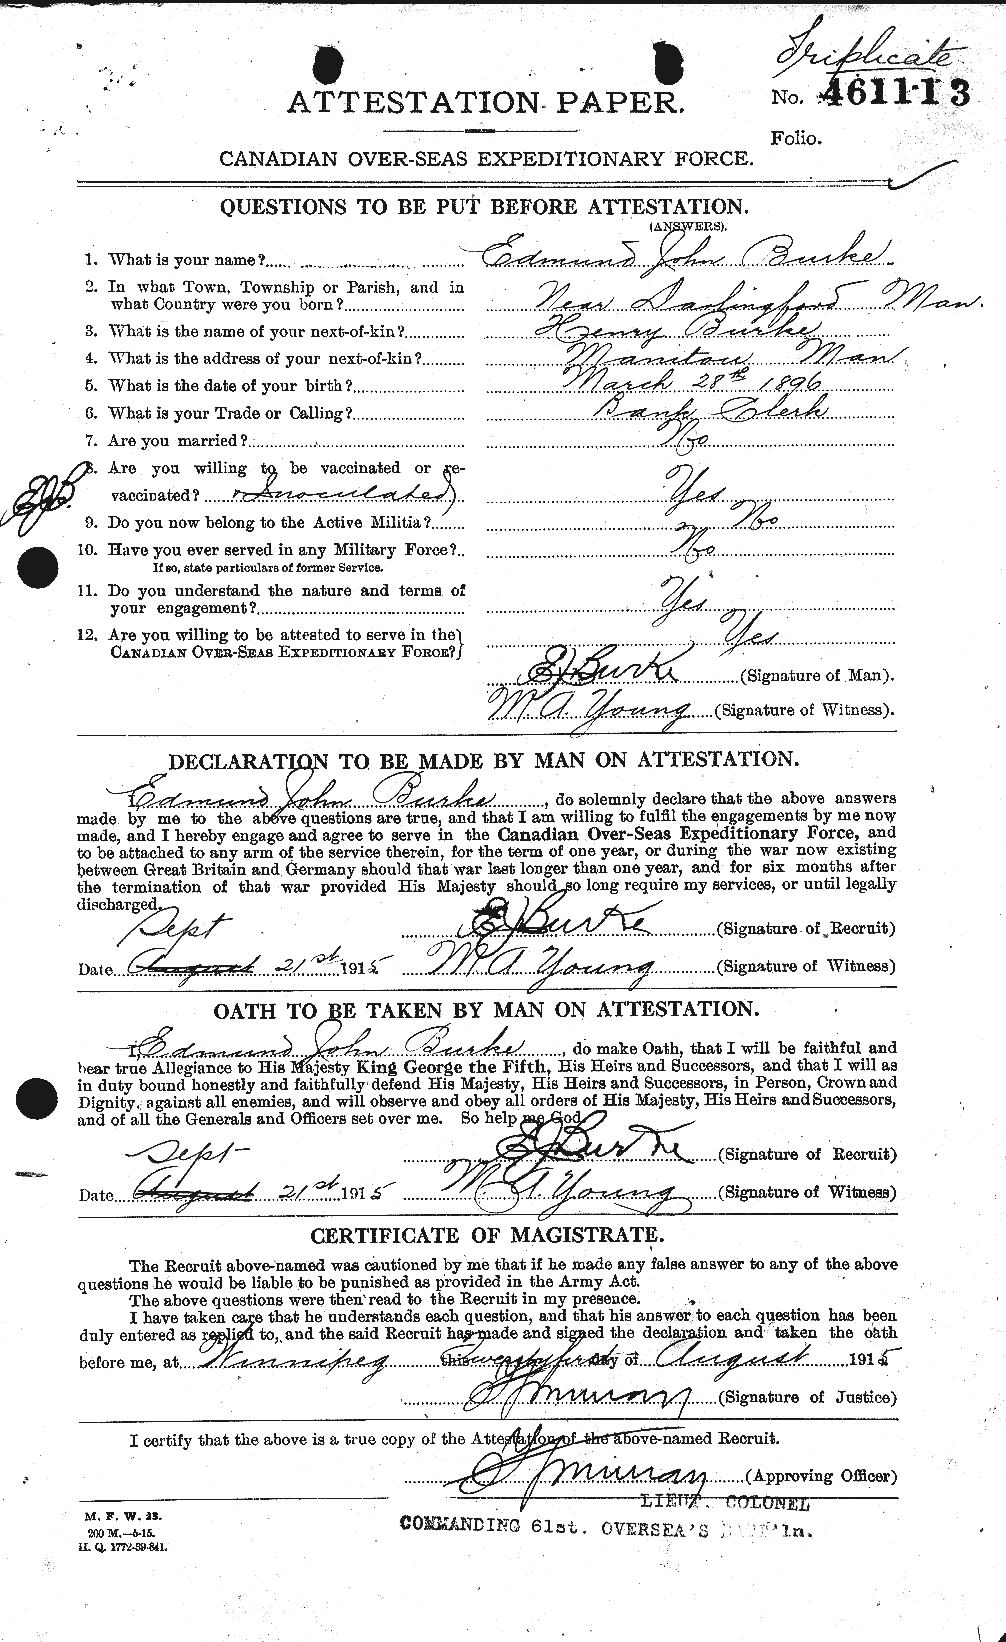 Dossiers du Personnel de la Première Guerre mondiale - CEC 272417a